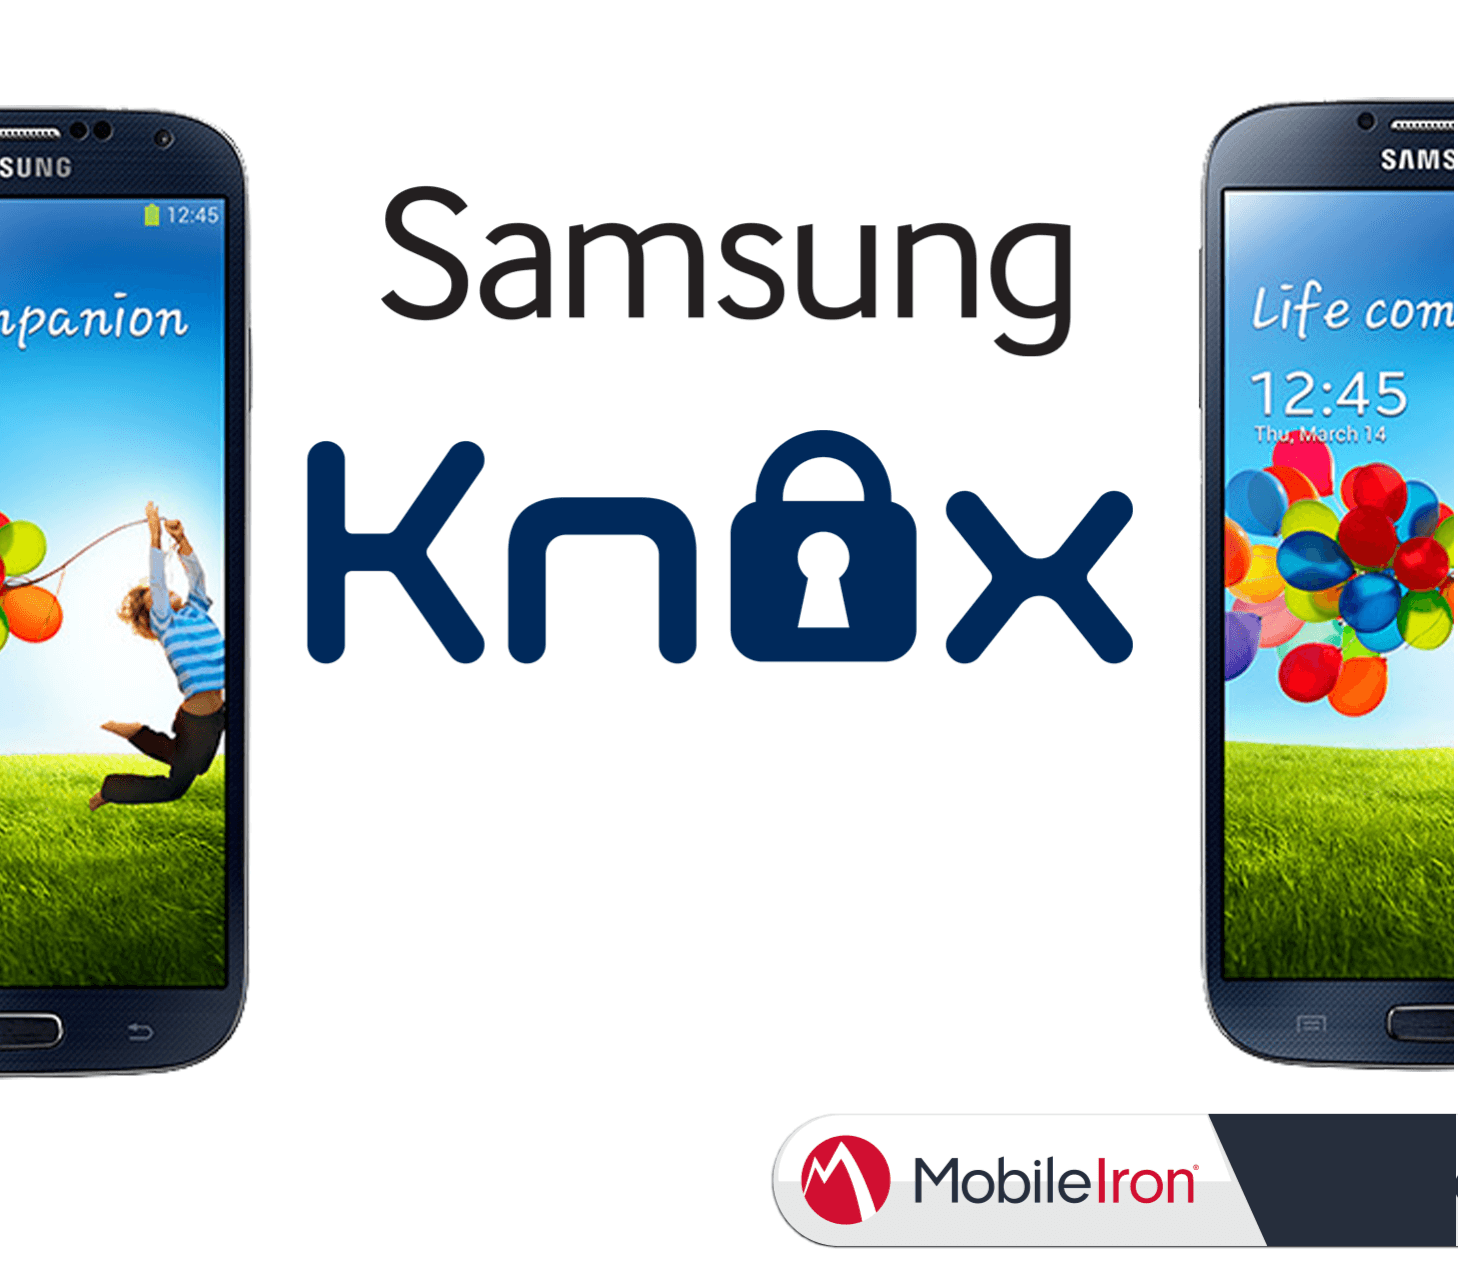 Samsung KNOX und MobileIron: